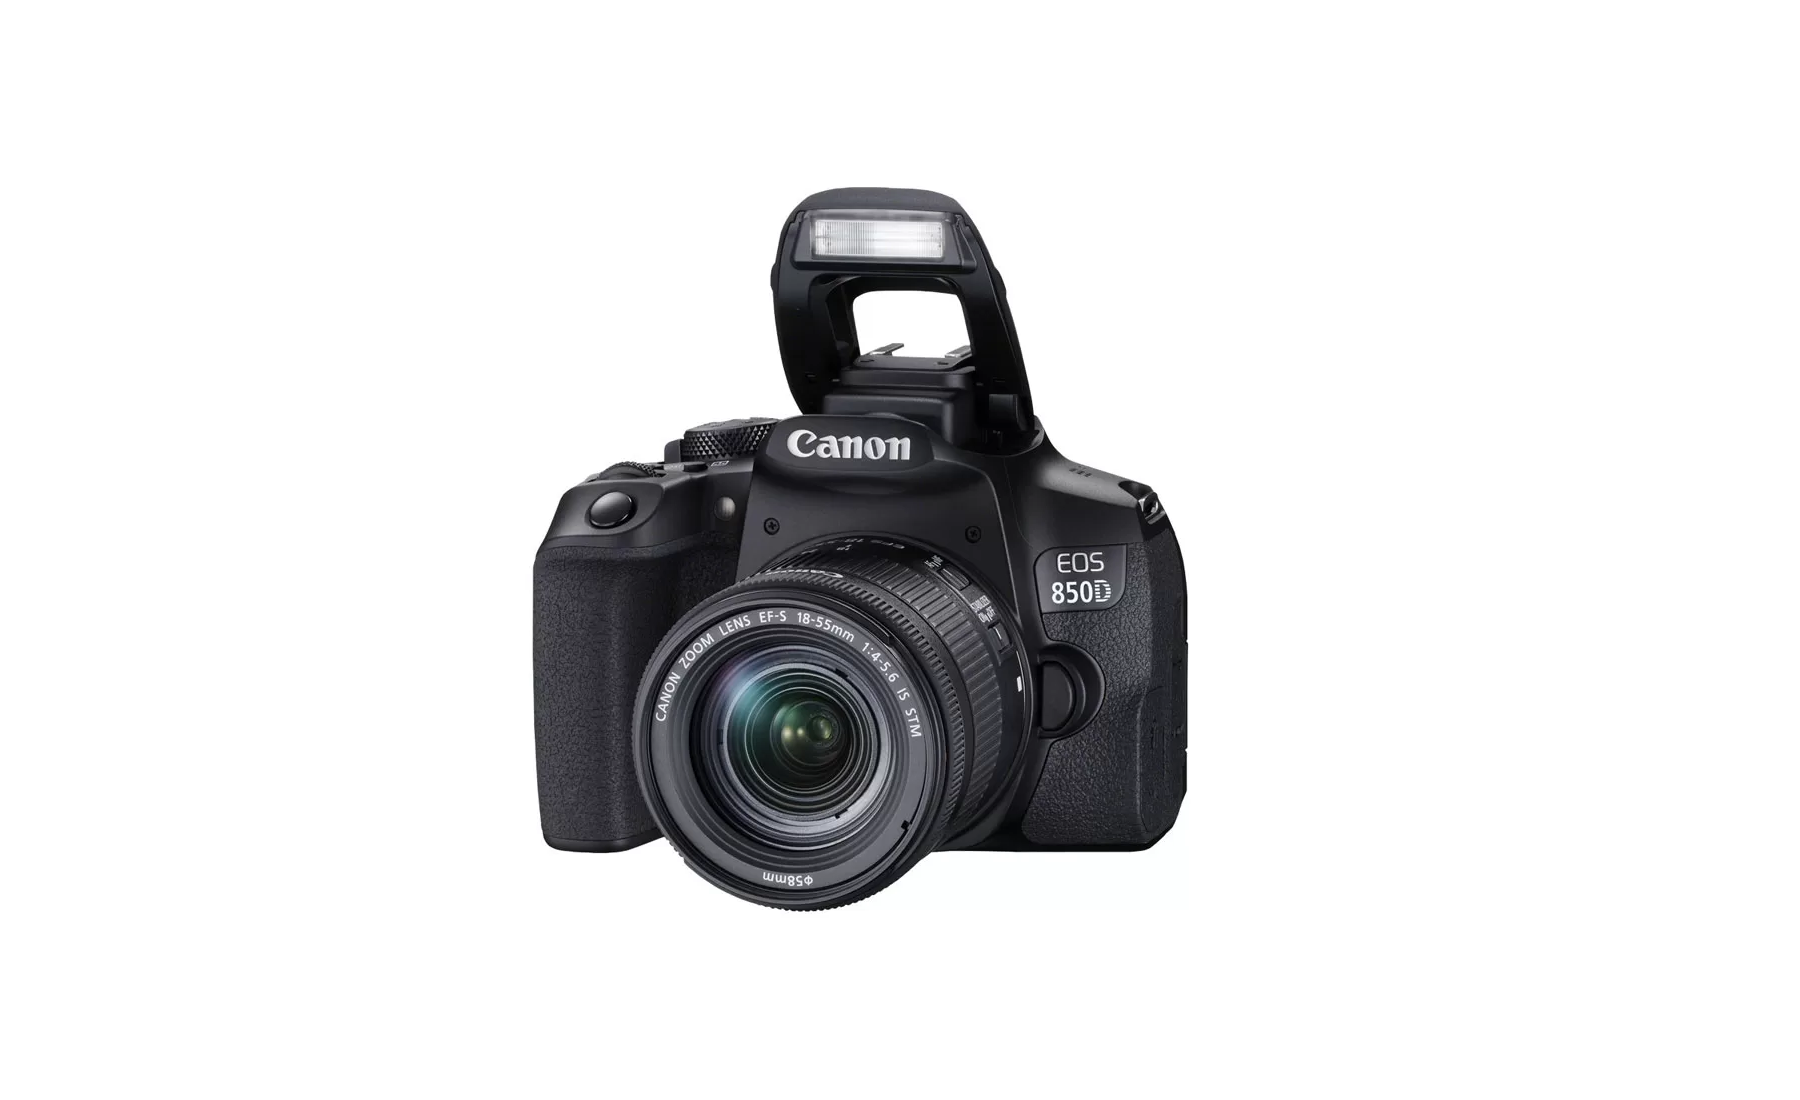 دوربین عکاسی کانن Canon EOS 850D kit EF-S 18-55mm f/4-5.6 IS STM - دیجیران- فروشگاه دوربین عکاسی و فیلمبرداری با بهترین قیمت